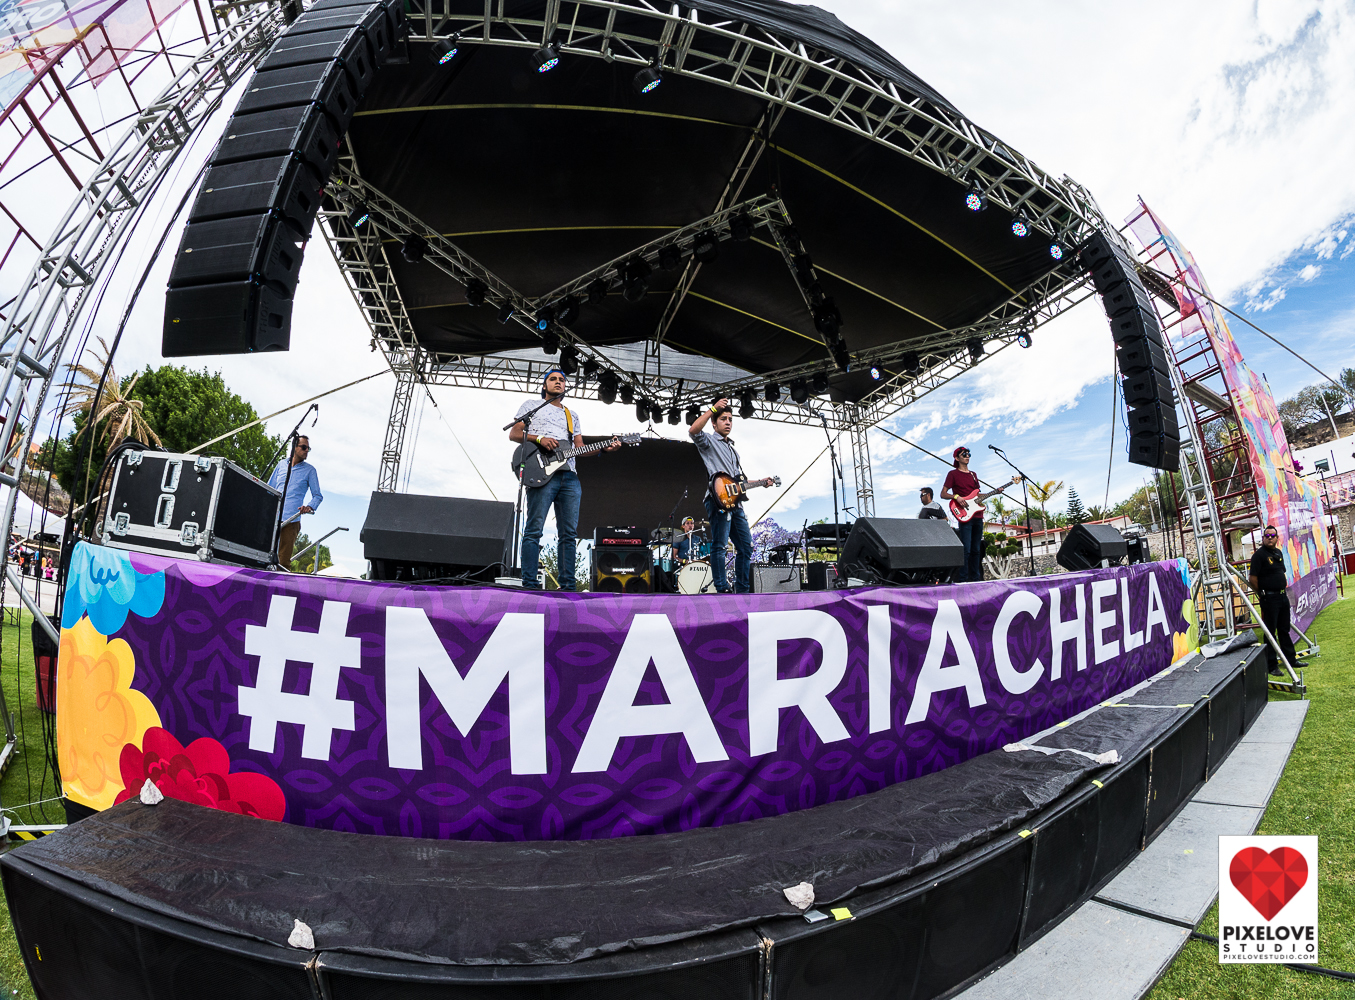 Fin de semana en el Festival Mariachela 2017 en la Plaza de Toros Juriquilla Querétaro. Cerveza artesanal, gastronomía, música en vivo y más.